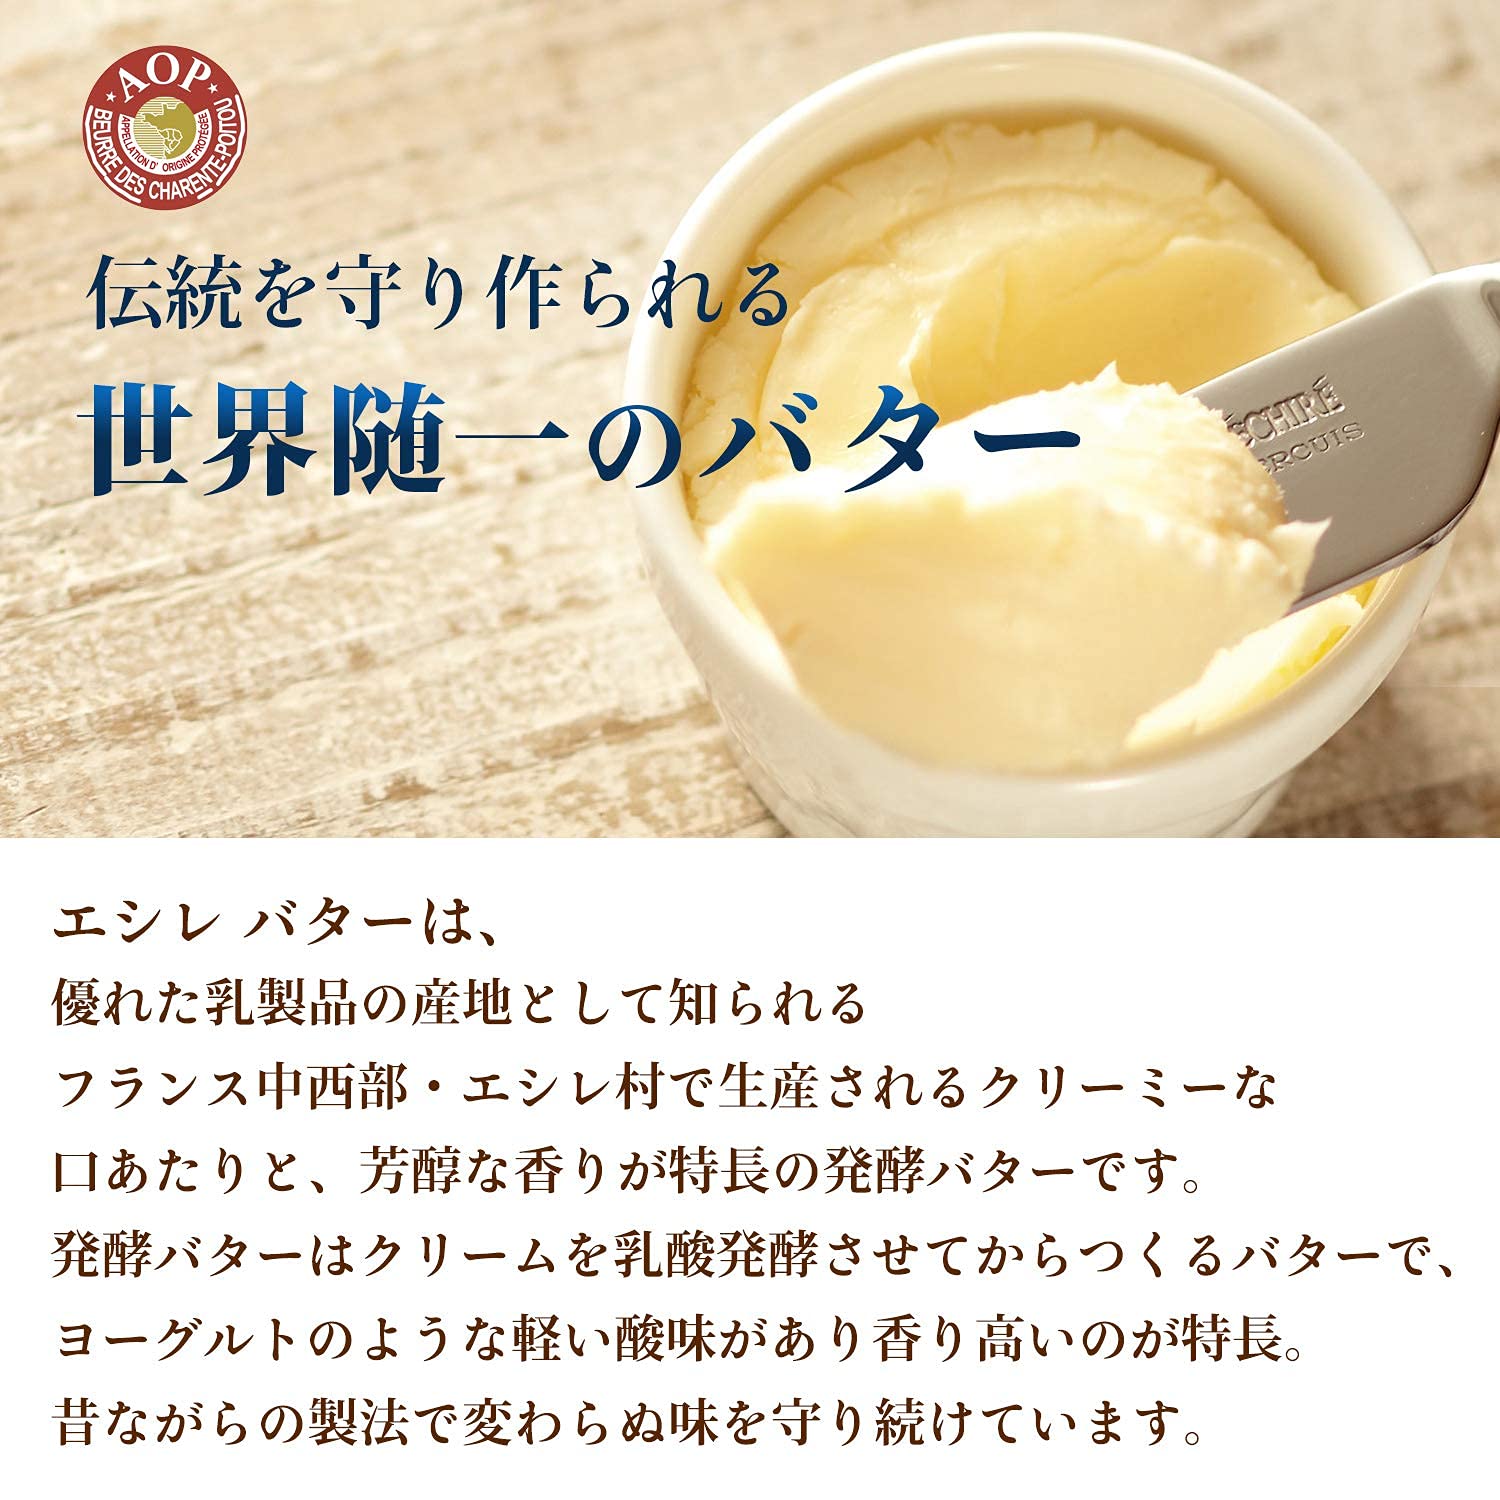 エシレ『発酵バター食塩不使用』